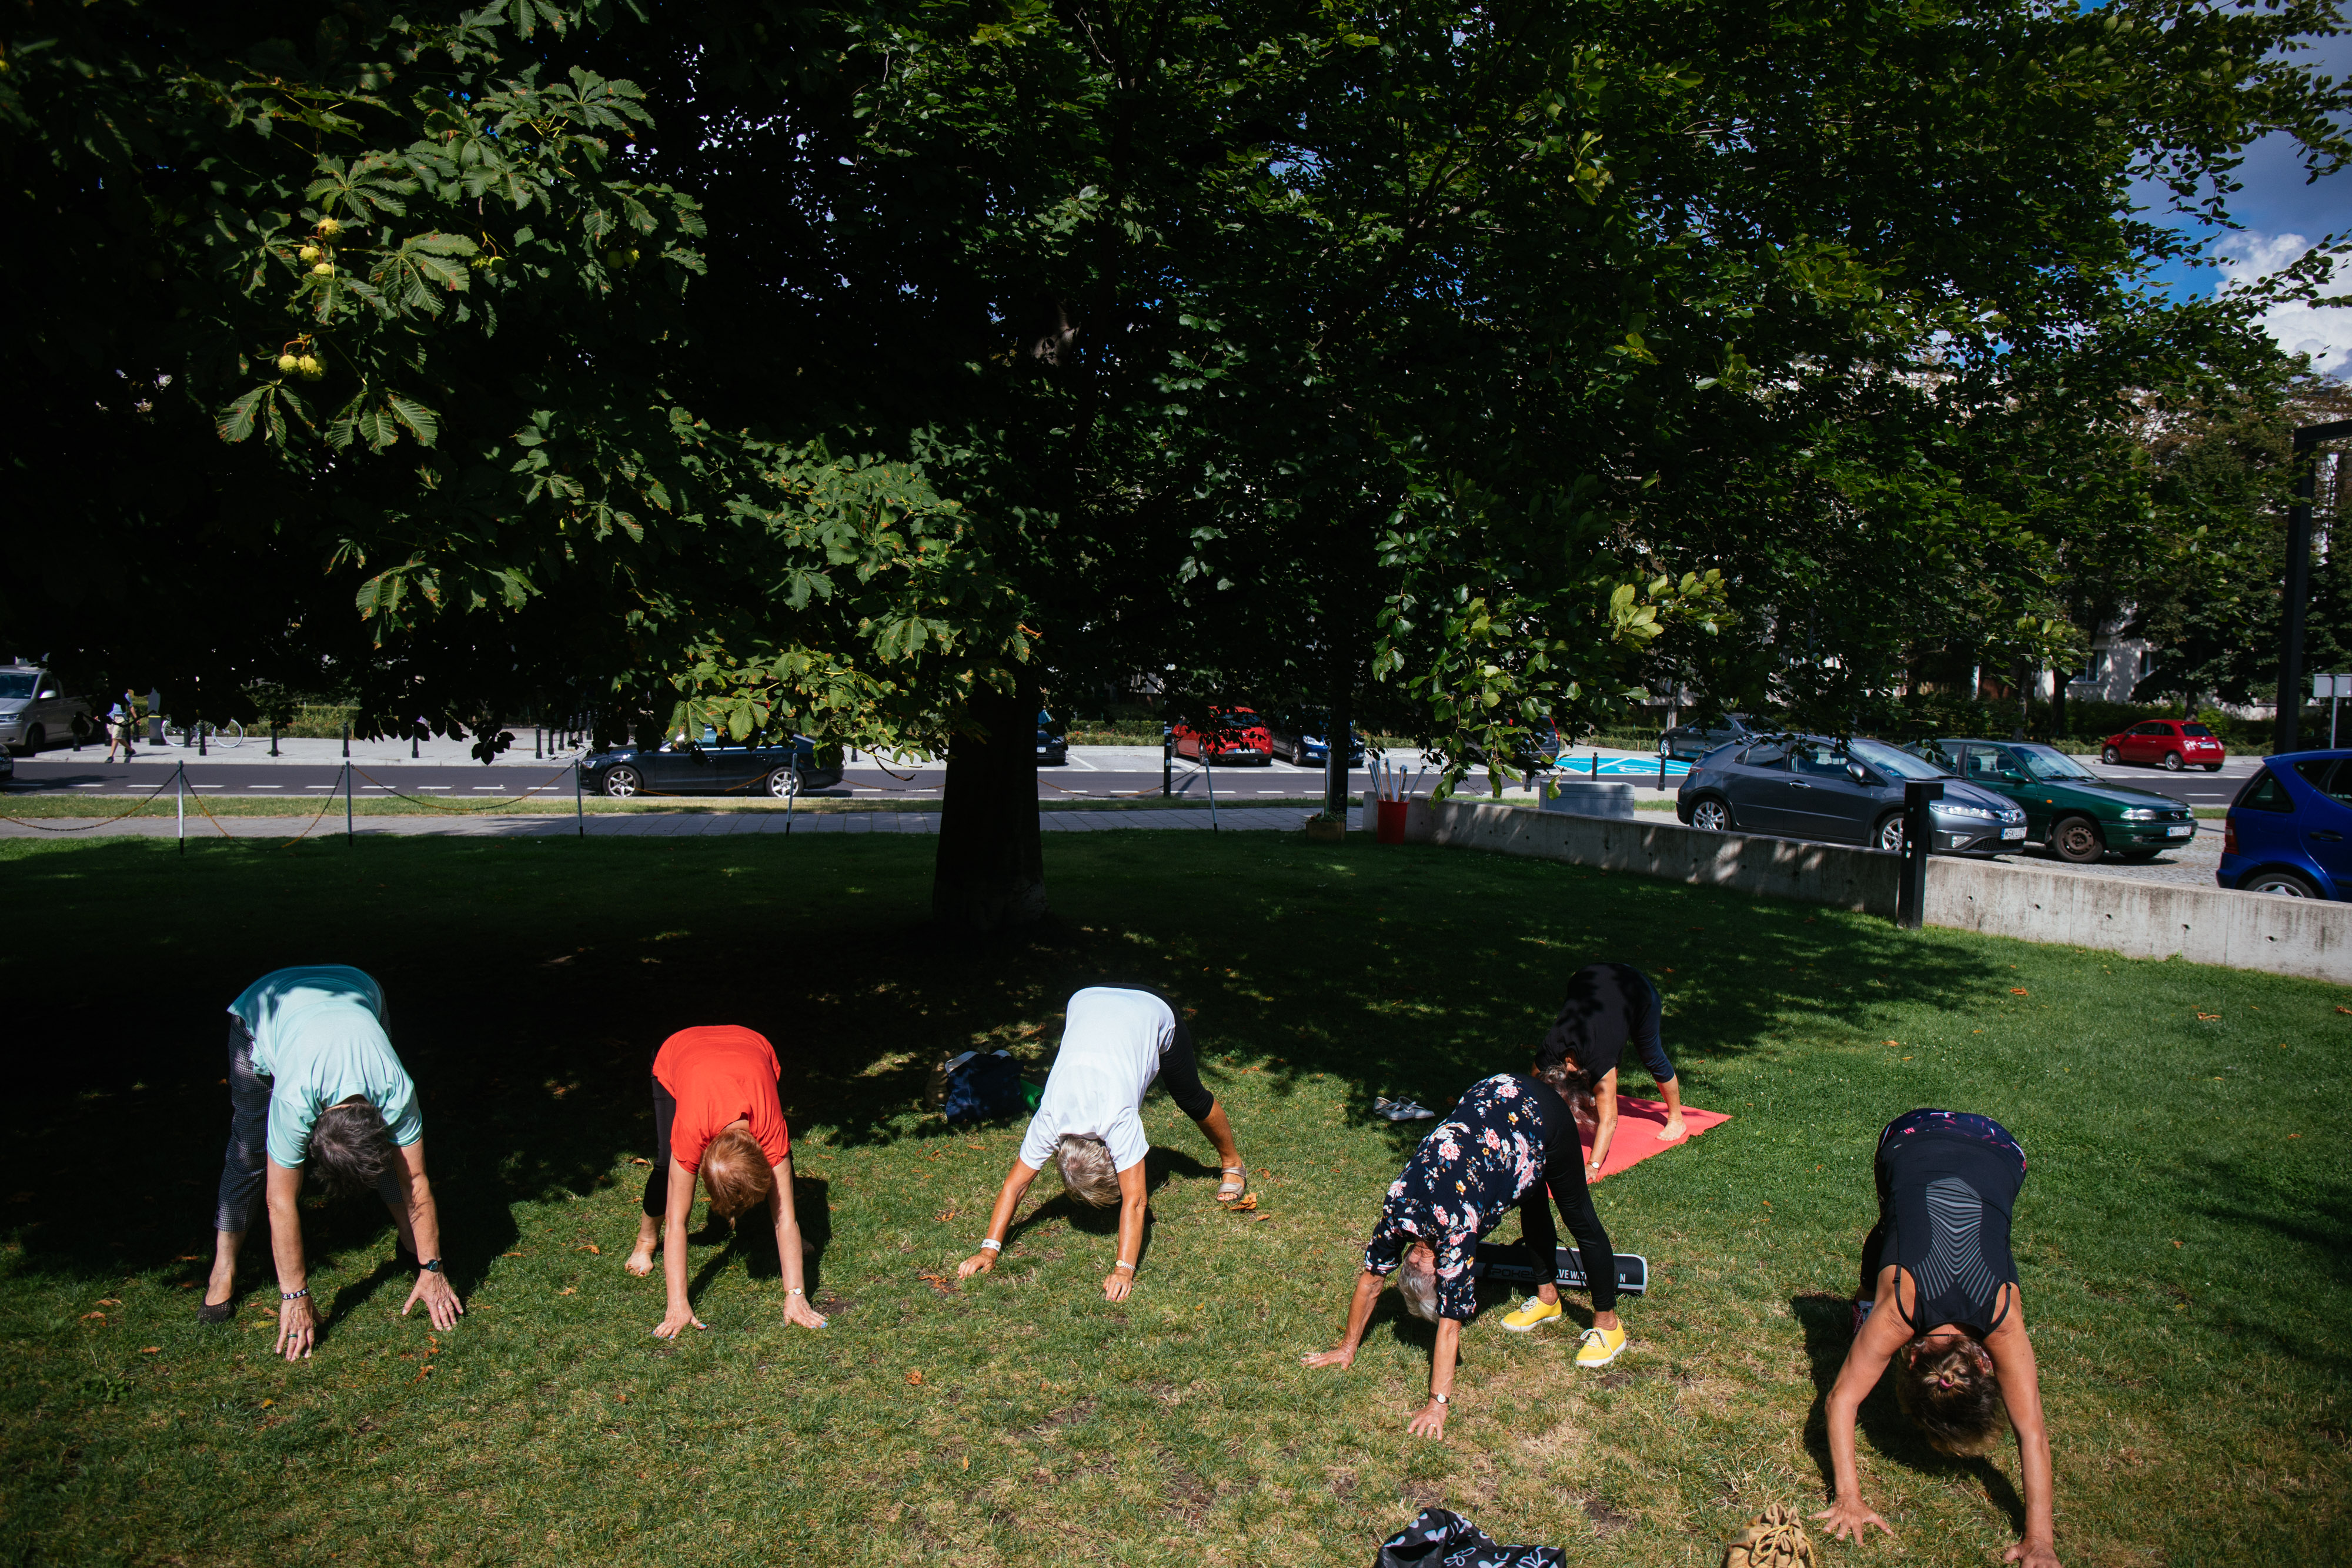 na obrazie widzimy grupę seniorów, w trakcie ćwiczeń w parku. 